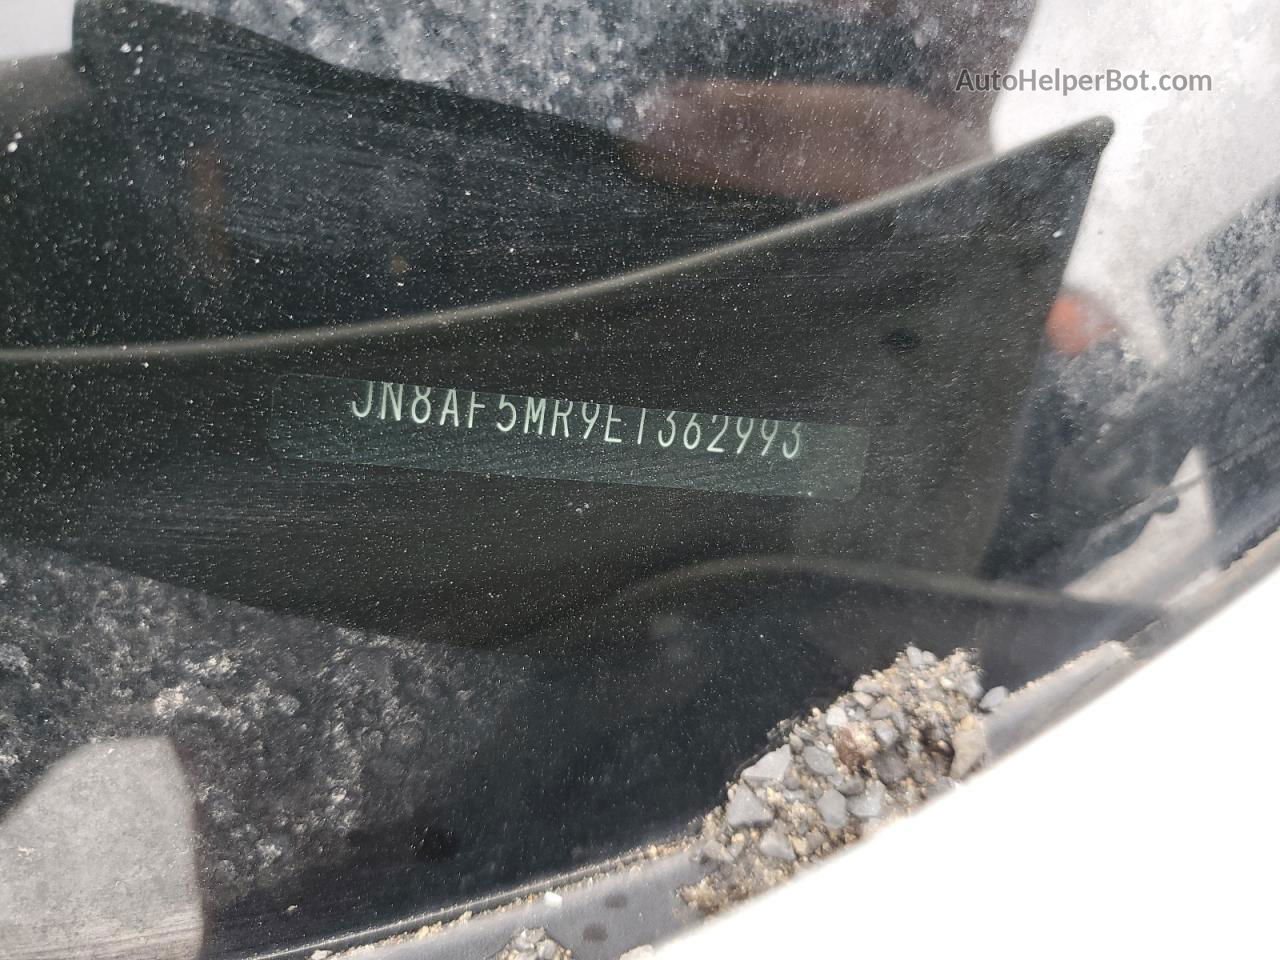 2014 Nissan Juke S White vin: JN8AF5MR9ET362993